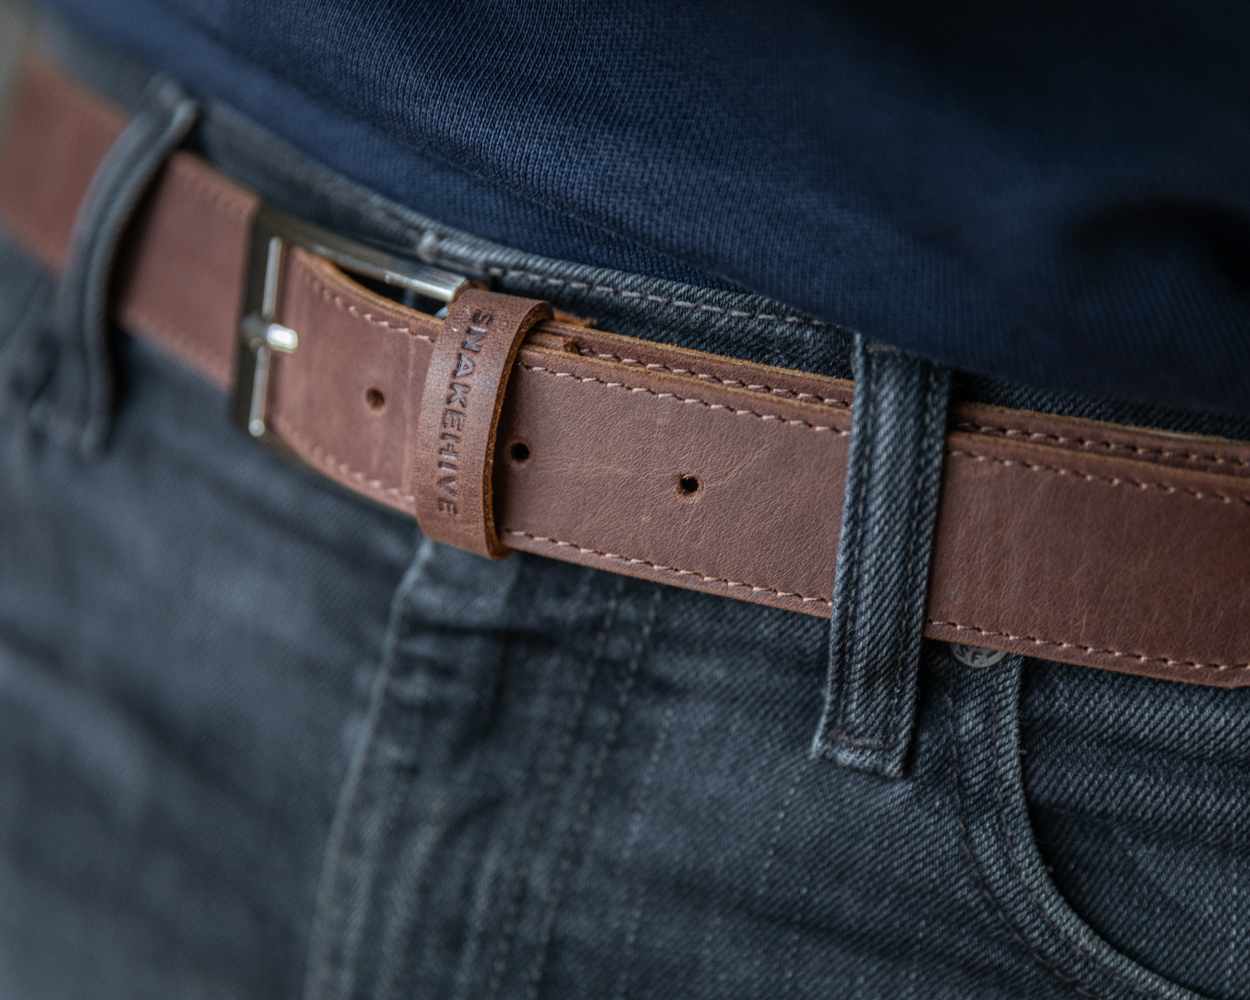 Vintage Leather Belt